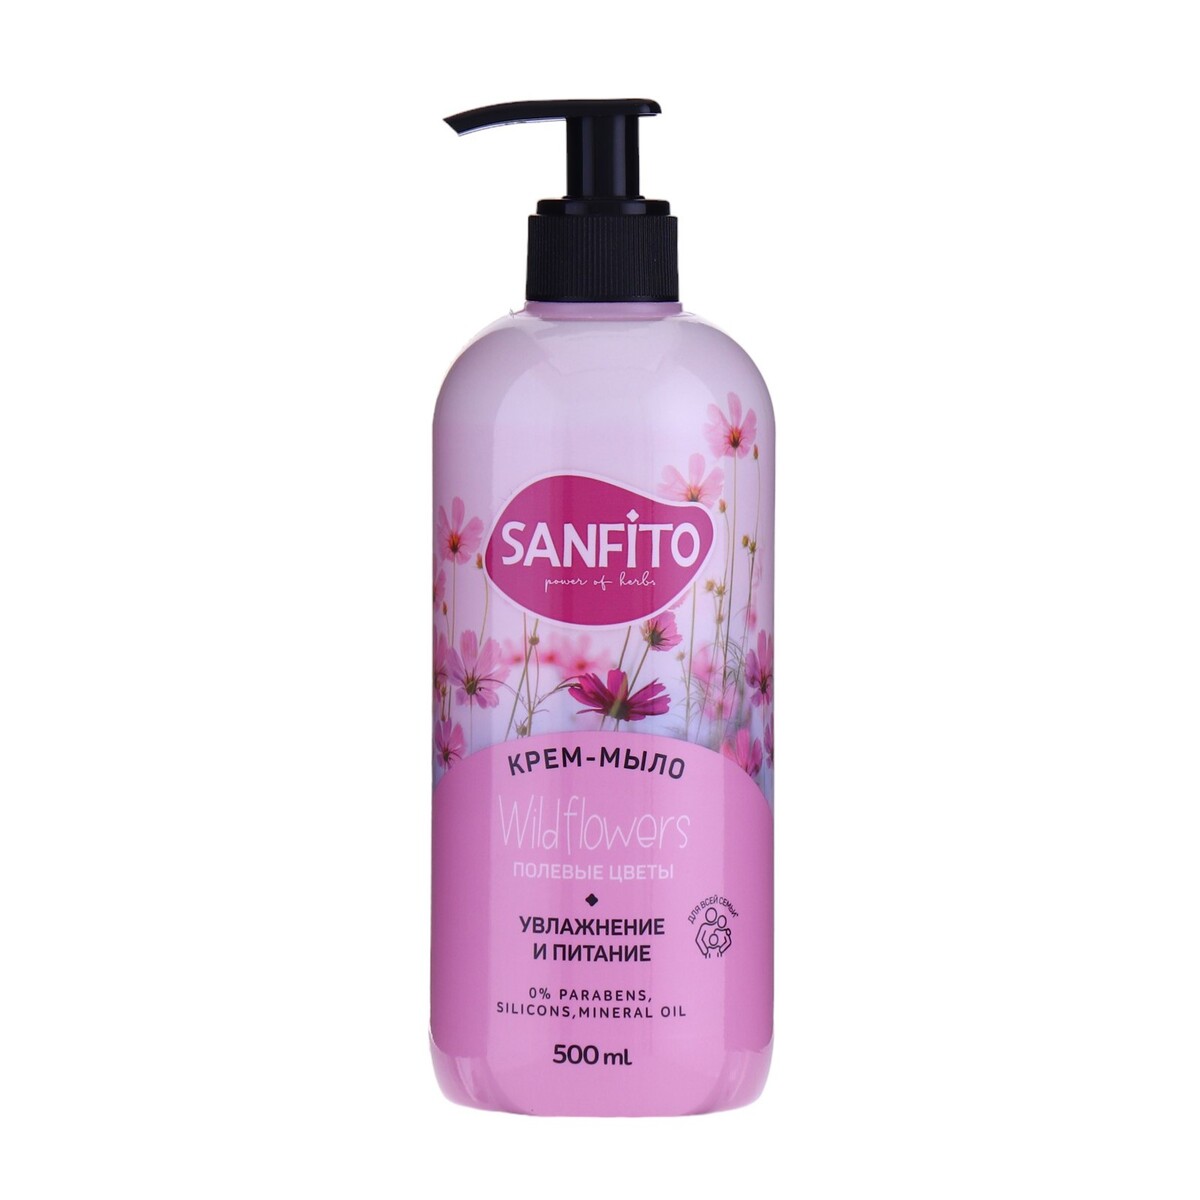 Sanfito крем-мыло sensitive, полевые цветы, 500 мл мыло жидкое sanfito energy сила луговых трав 1 л д пак